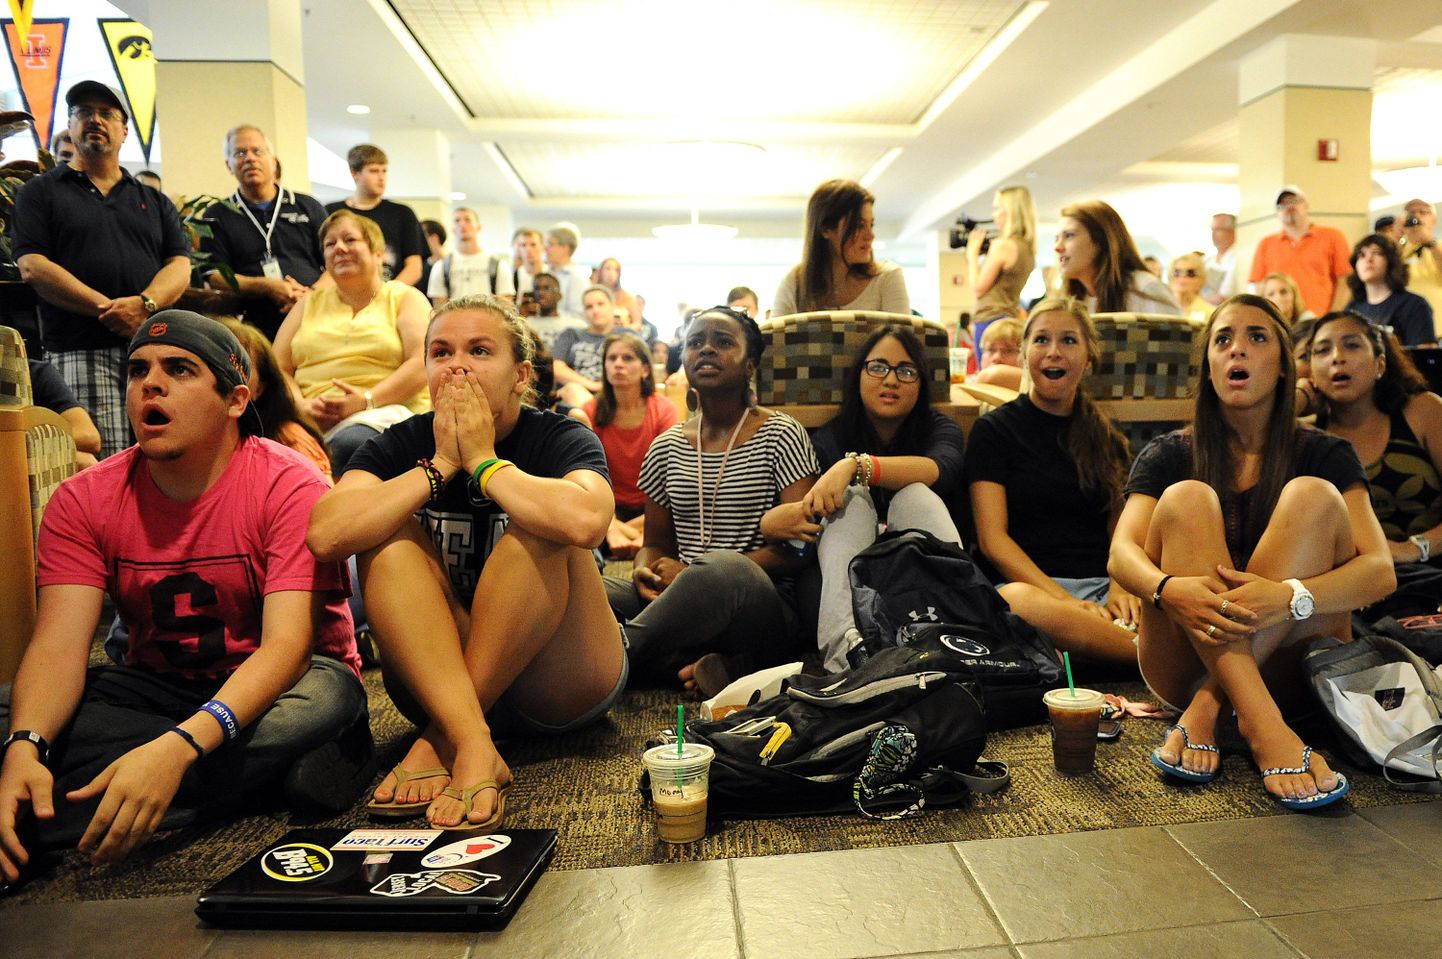 Penn State'i üliõpilased olid otsuse väljakuulutamise järel šokis.